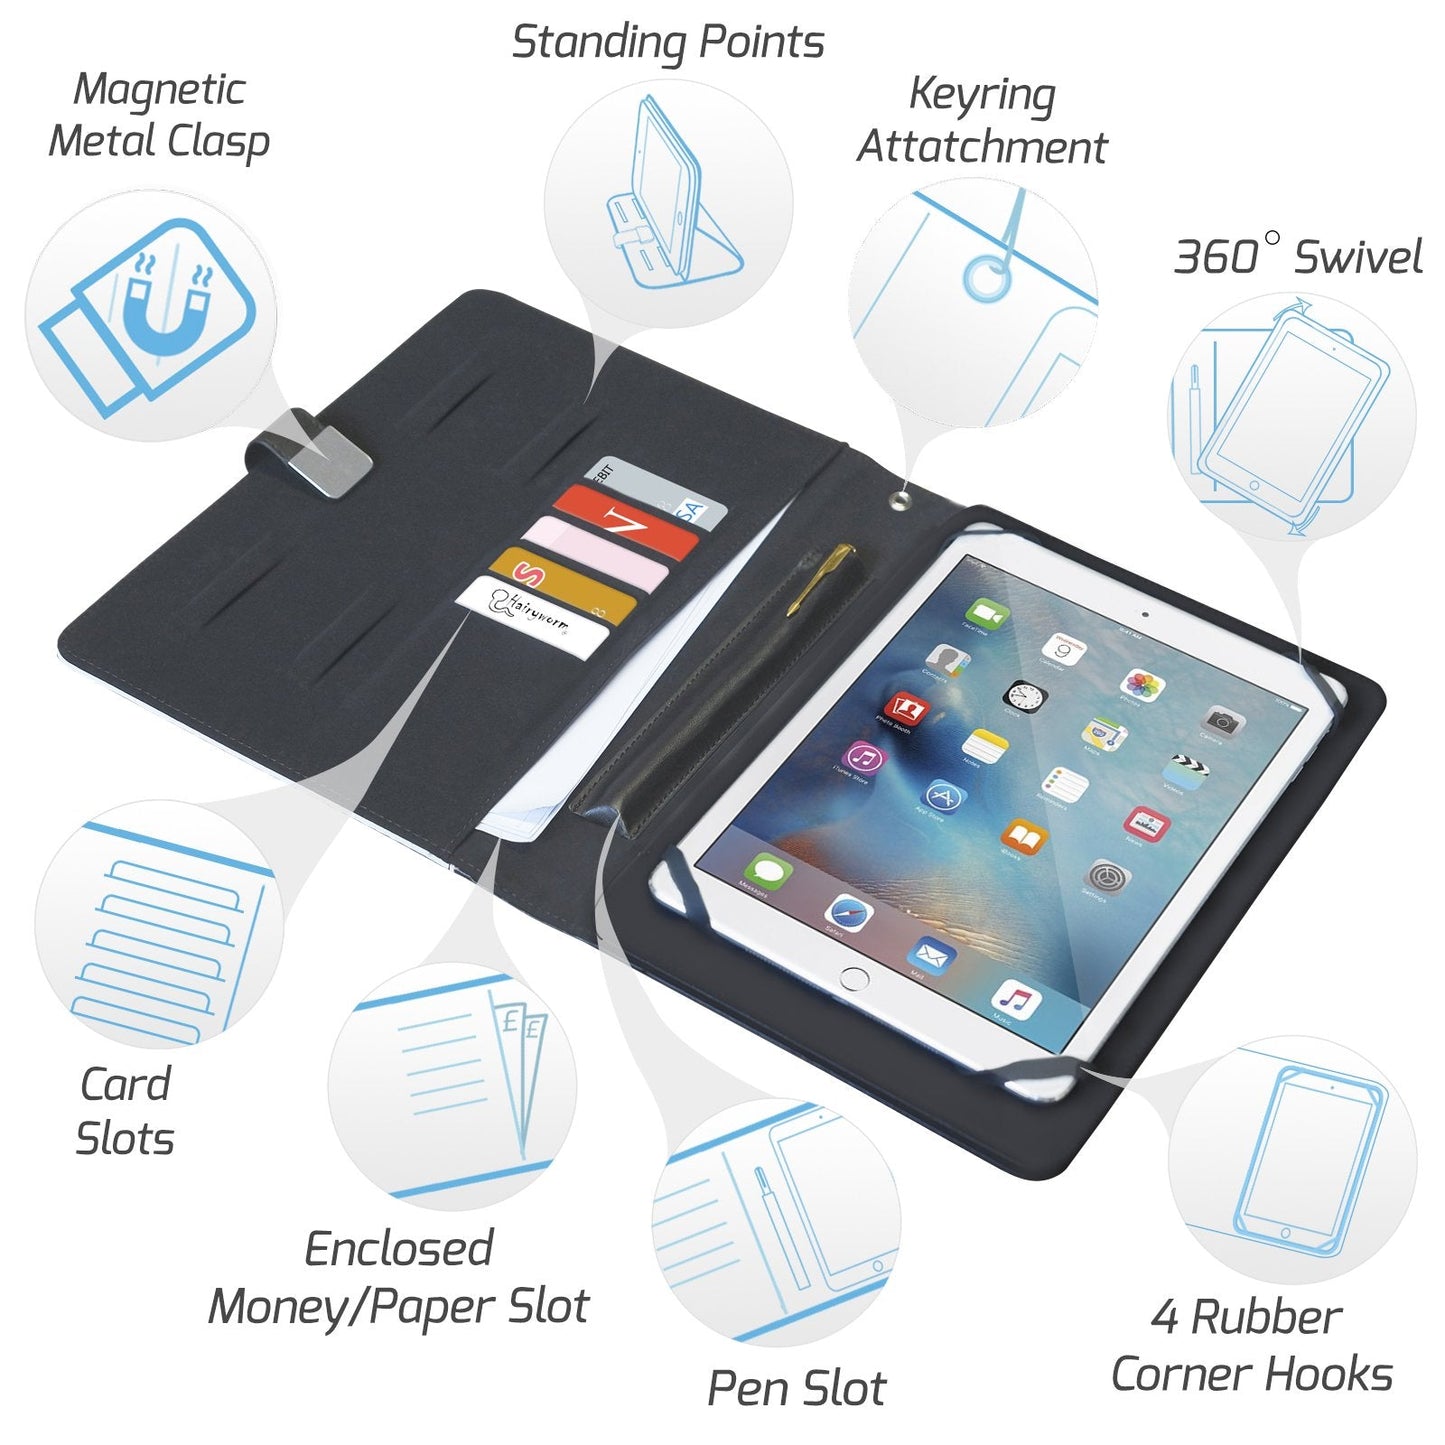 Personalisierte Alba Universal-Tablet-Hülle aus Leder mit blauem Marmorstreifen